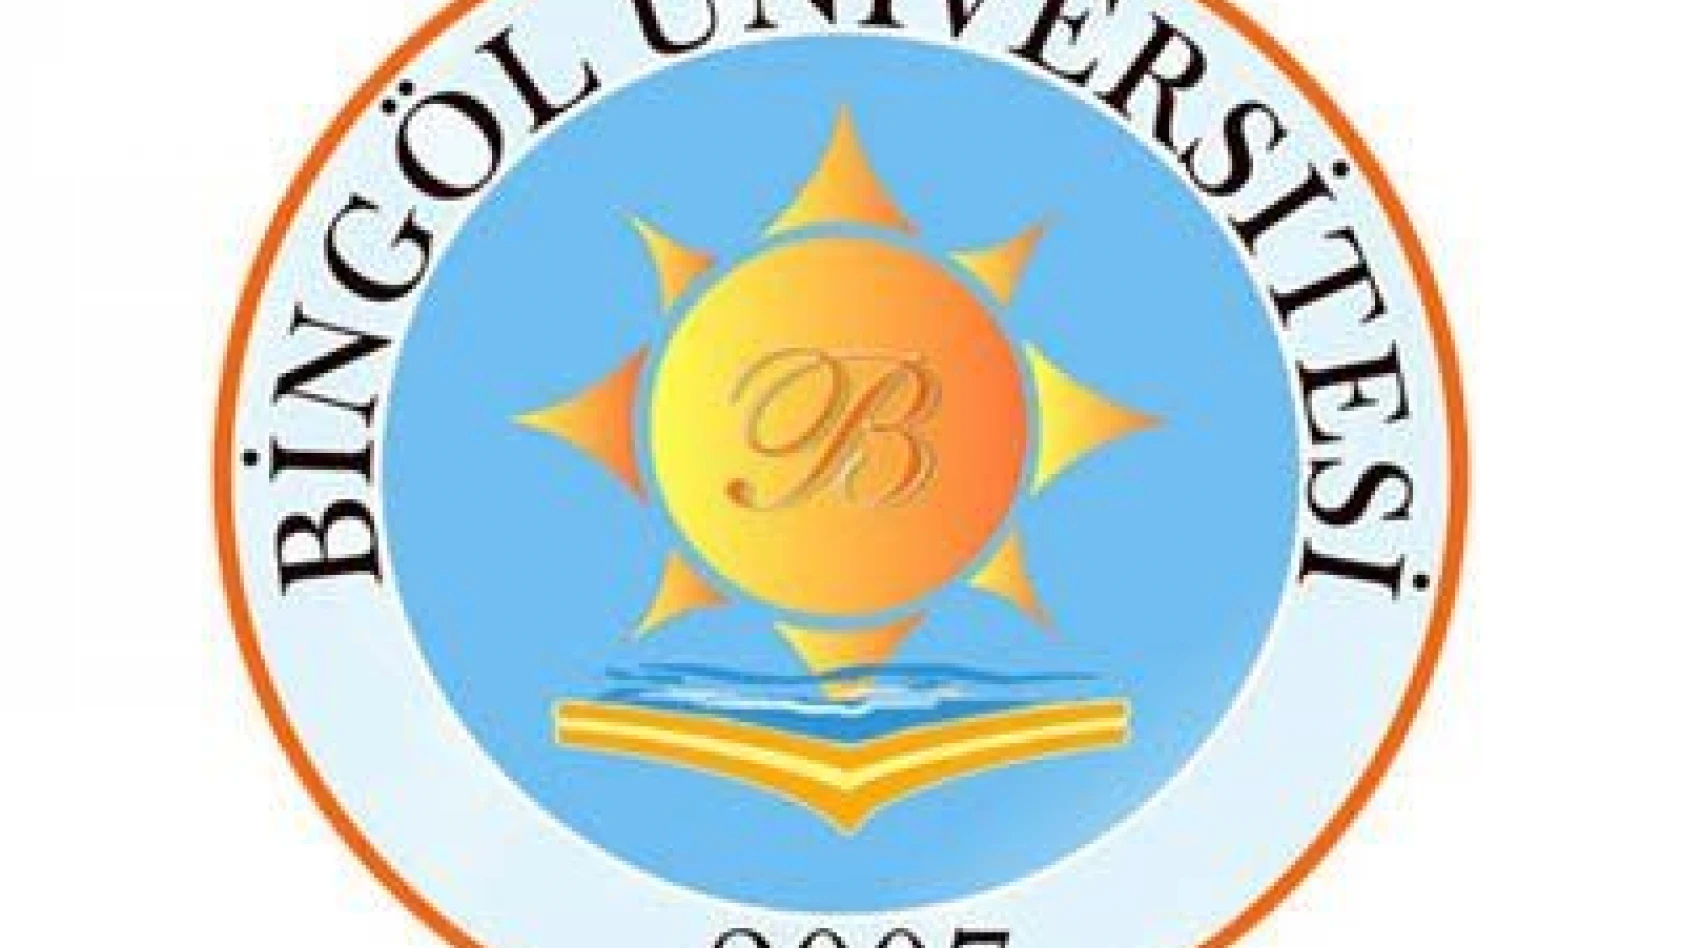 Bingöl Üniversitesi Öğretim Görevlisi ve Araştırma Görevlisi alıyor